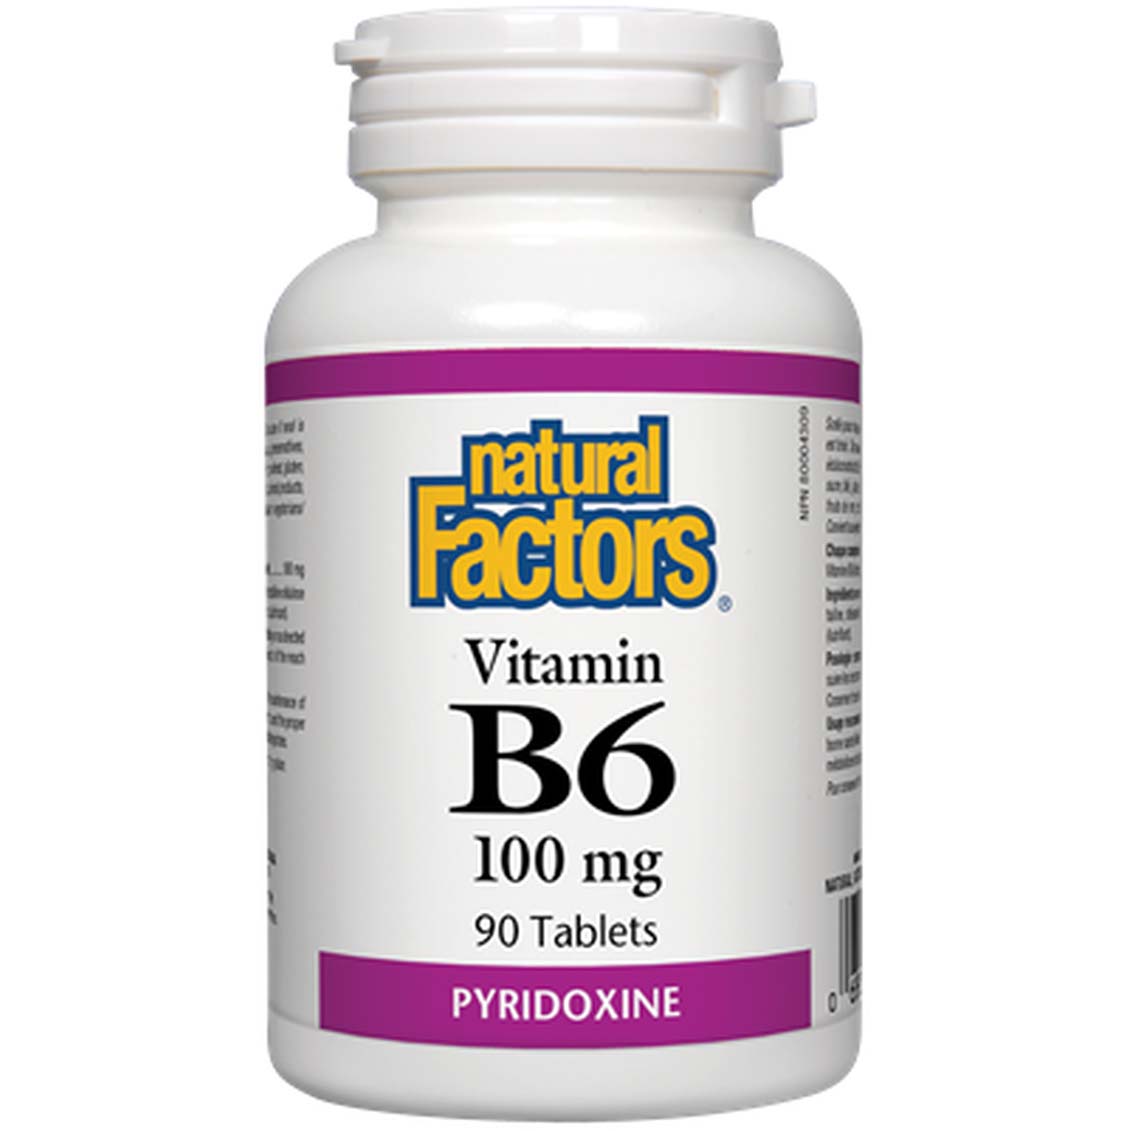 ناتشورال فاكتورز فيتامين ب 6 بيريدوكسين 90 حبة 100 ملجم